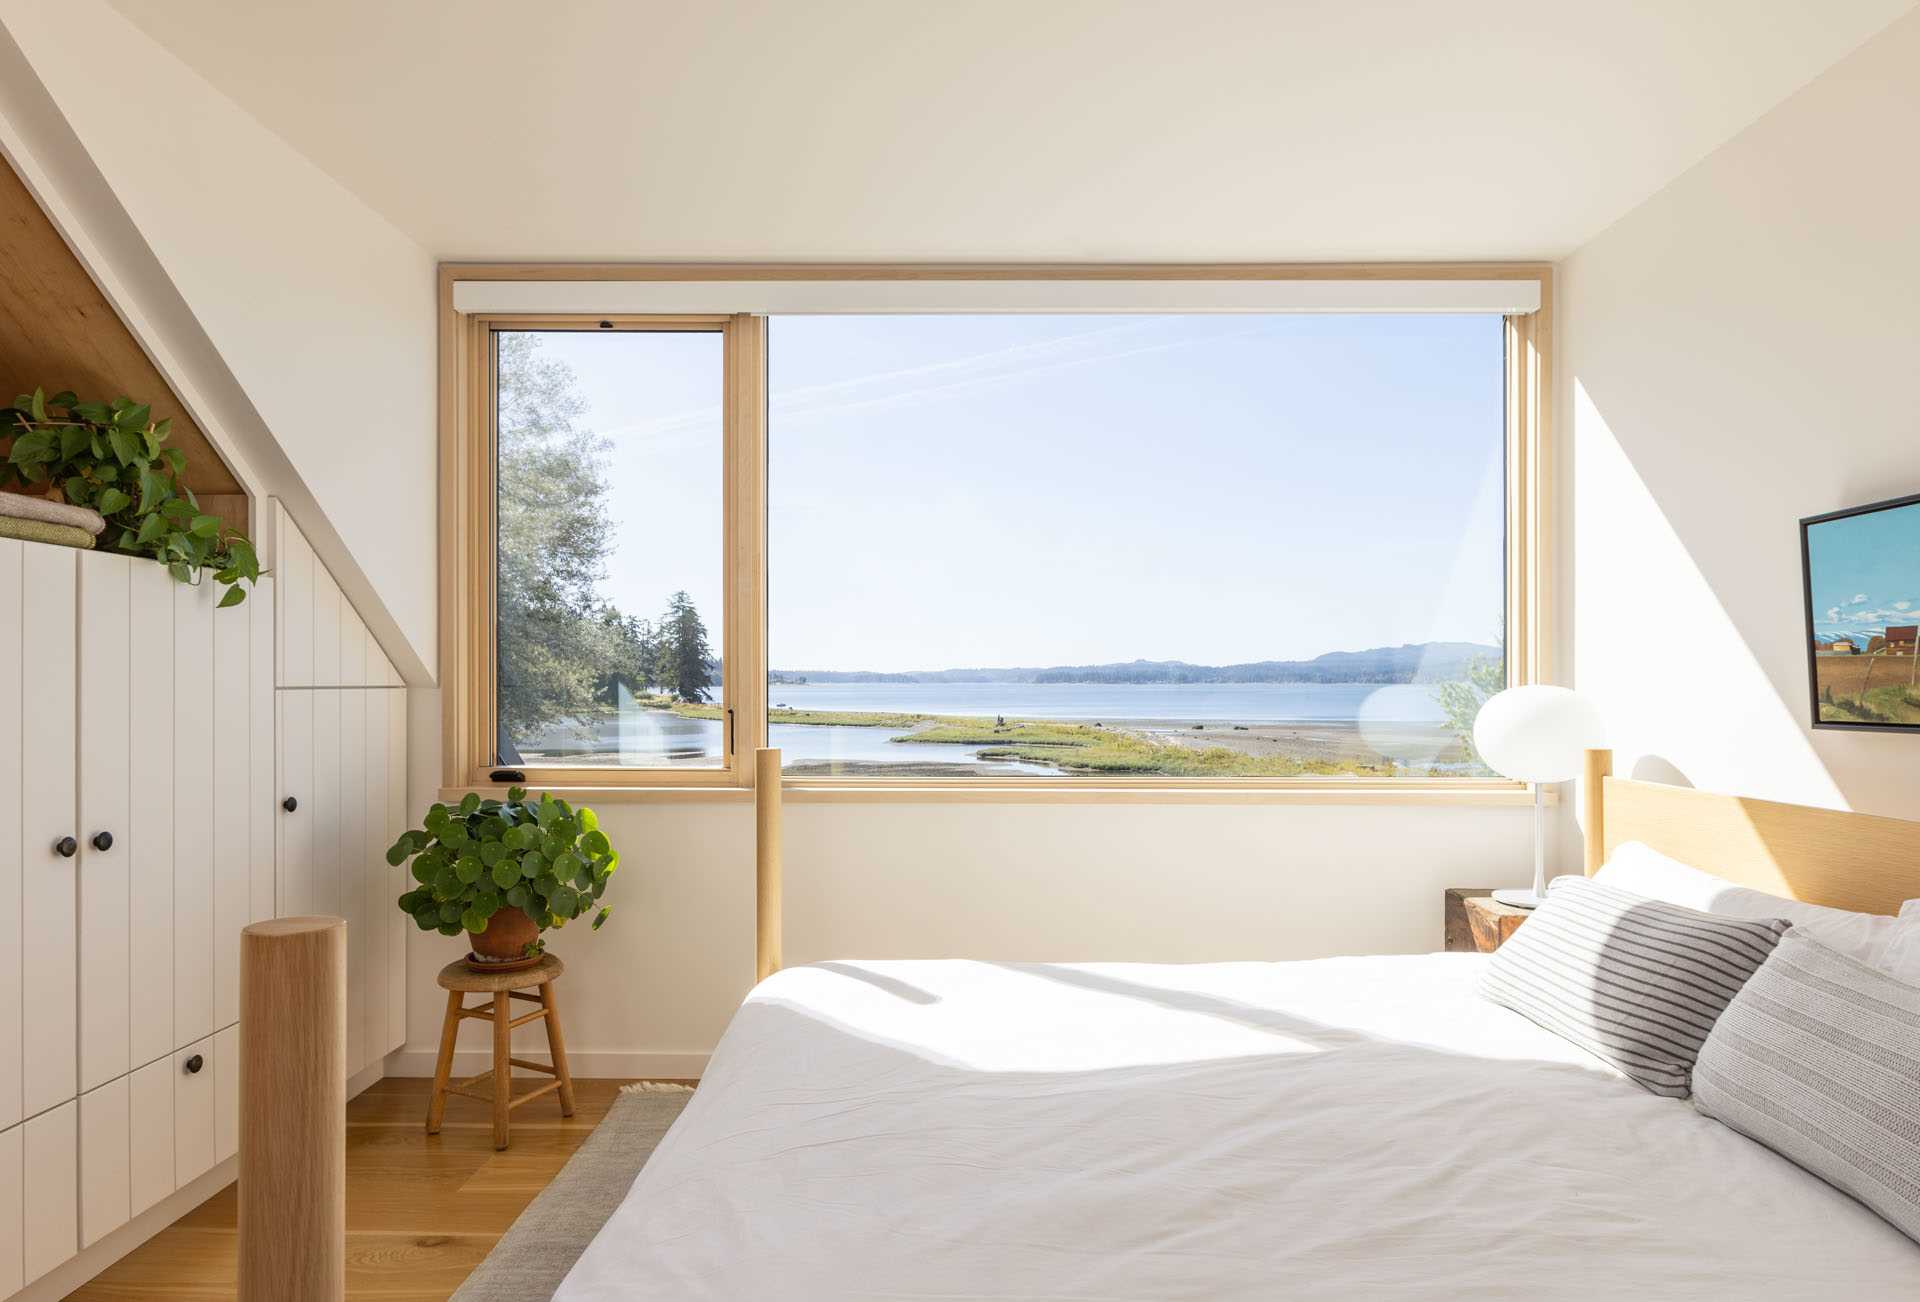 یک اتاق خواب مدرن با الهام از خانه‌های مزرعه با یک پنجره تصویری، انباری توکار، و یک ساحل پنجره.